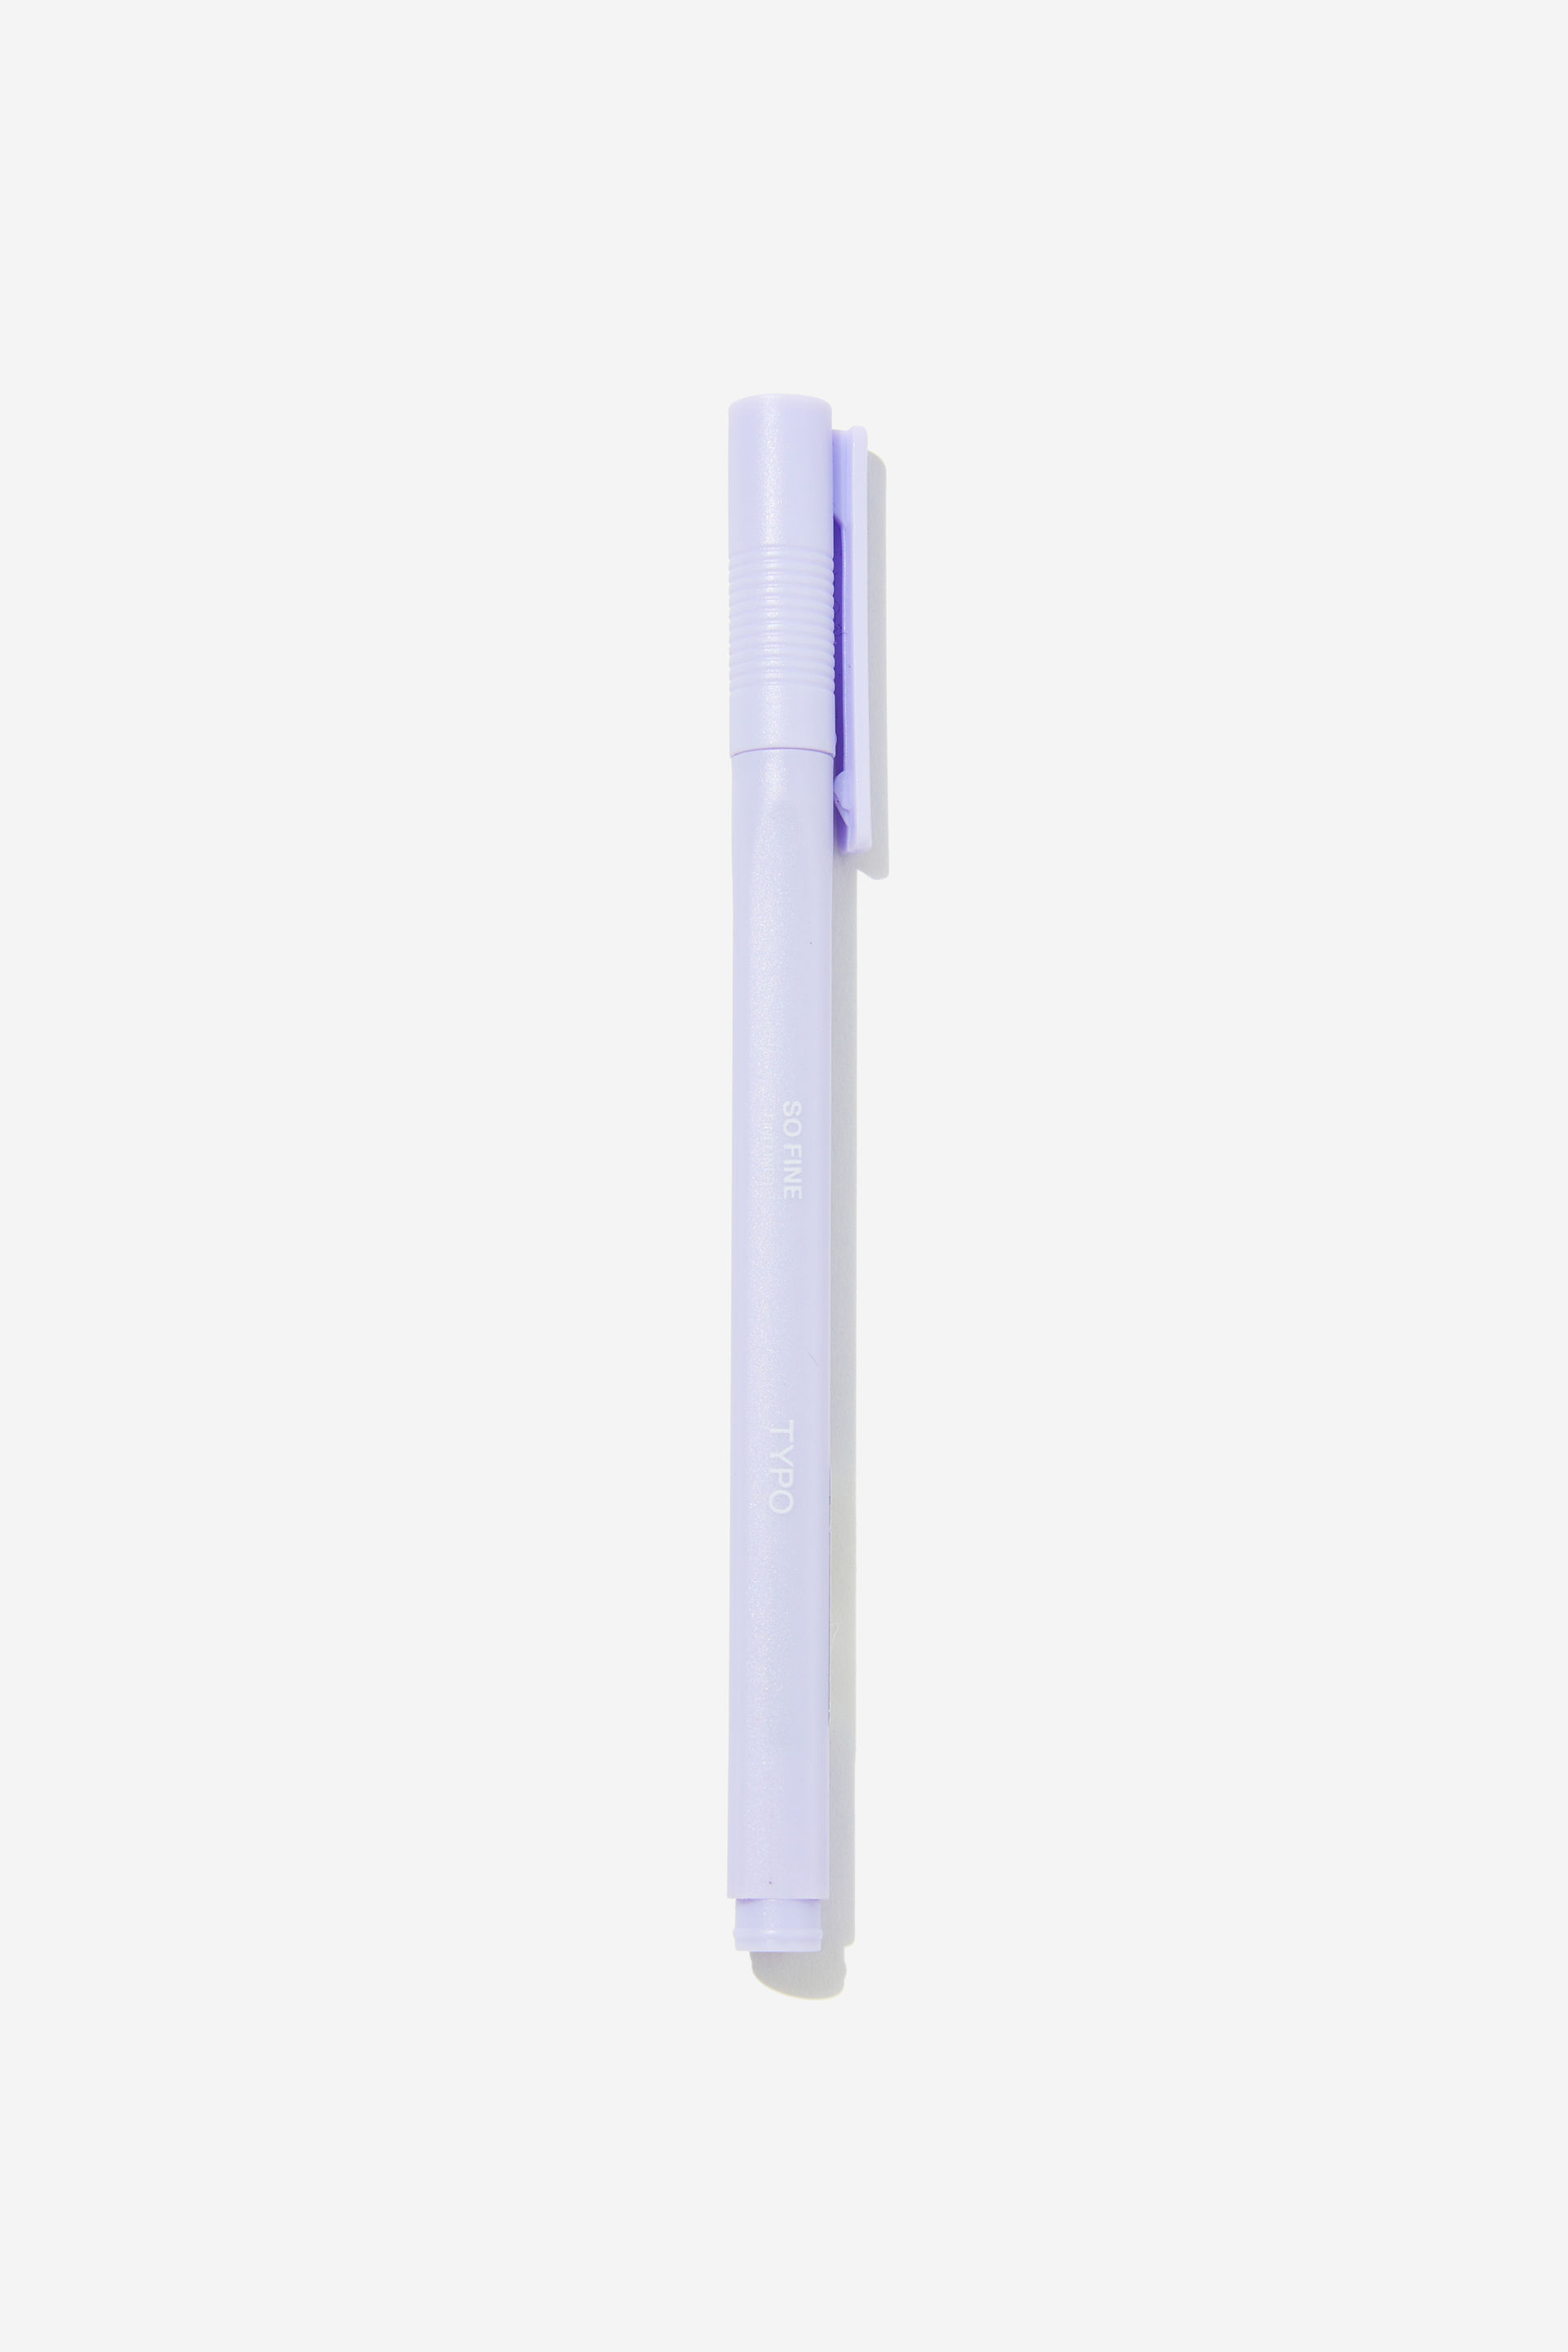 Typo - So Fine Fineliner Pen - Soft lilac